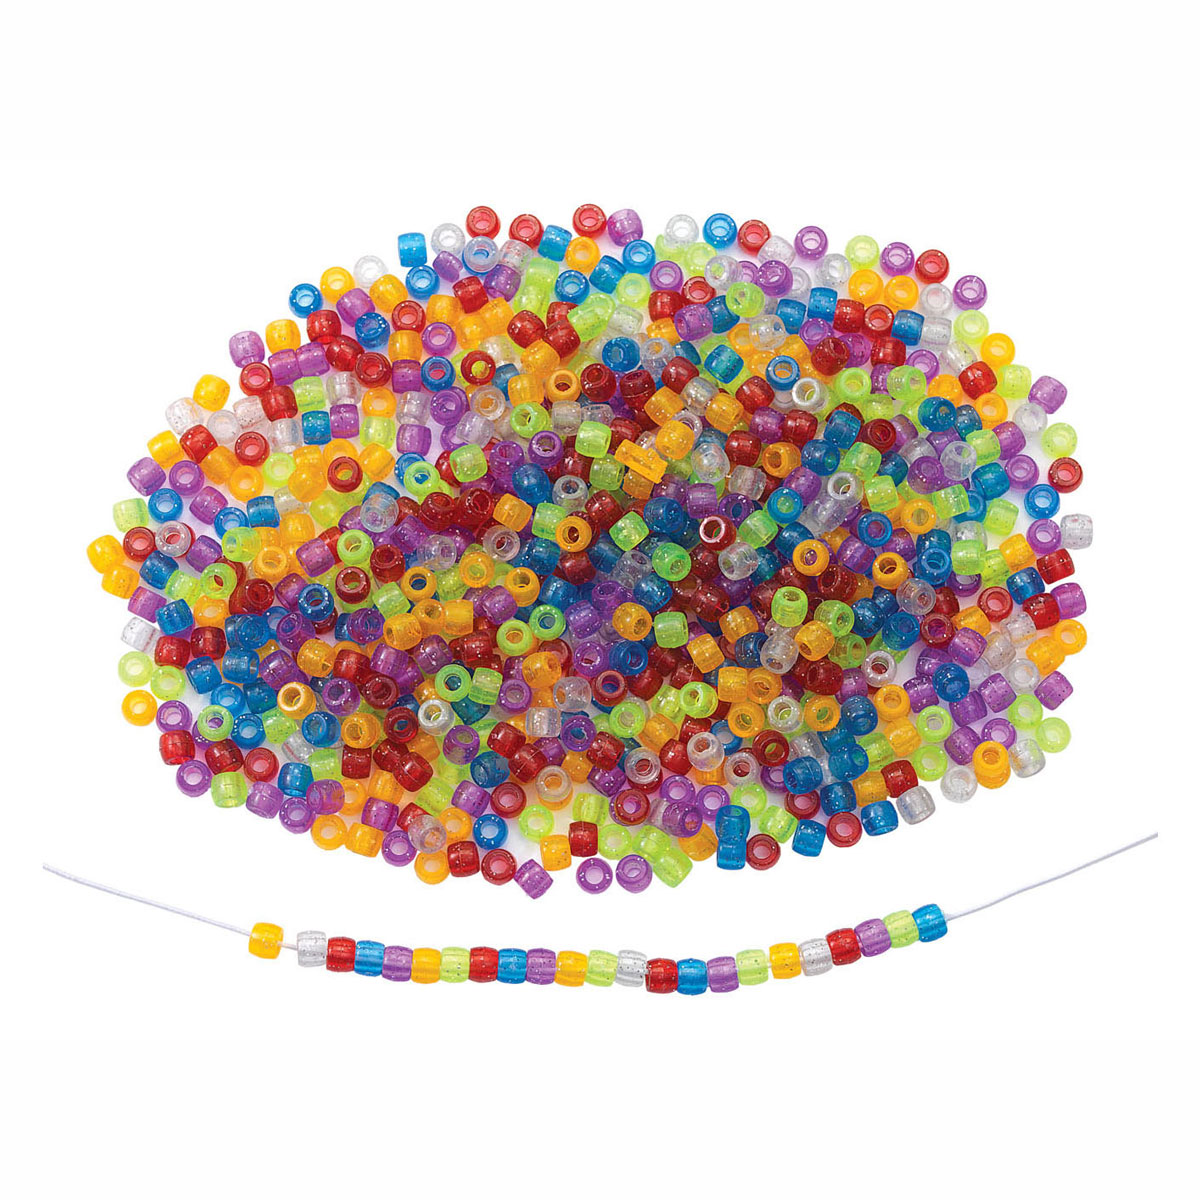 Colorations - Perles scintillantes colorées en sachet, 453 grammes